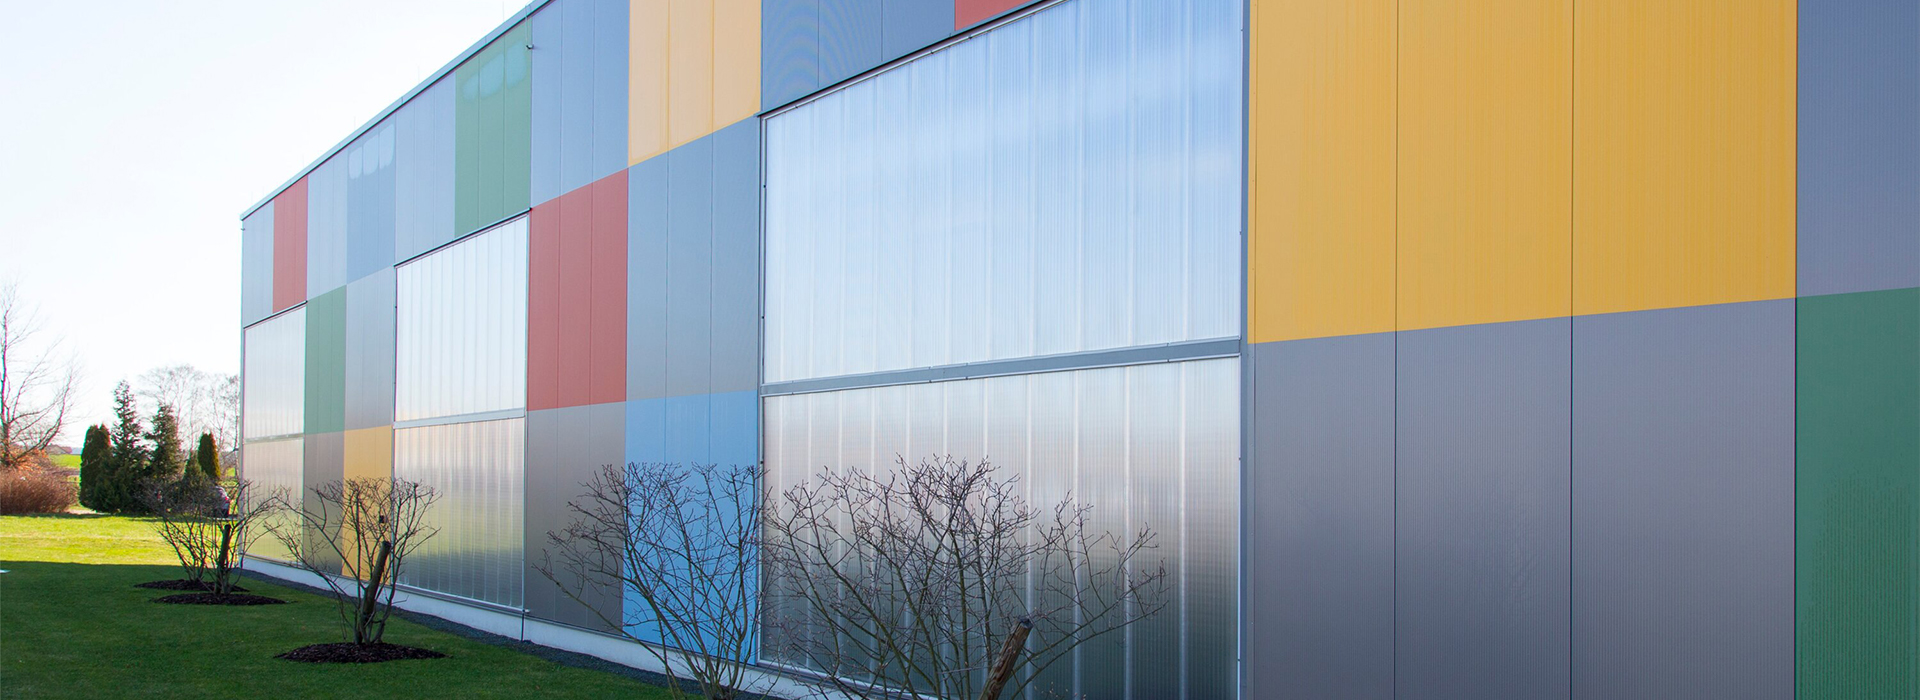 Translucent façade on building envelope